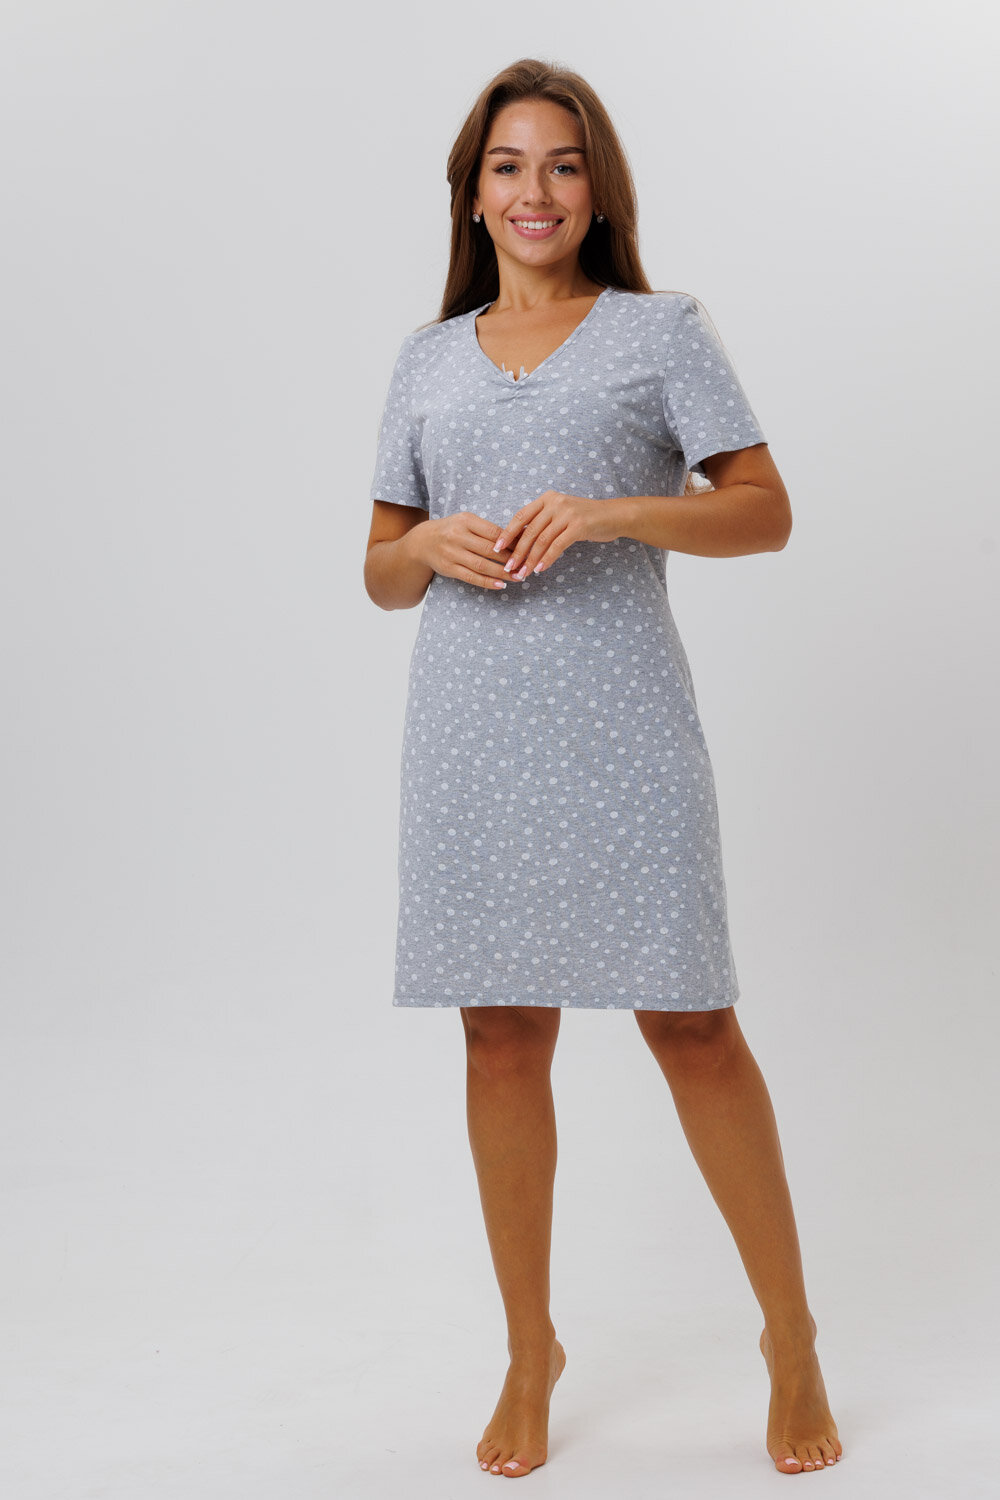 Сорочка Modellini укороченная, короткий рукав, размер 46, серый - фотография № 2